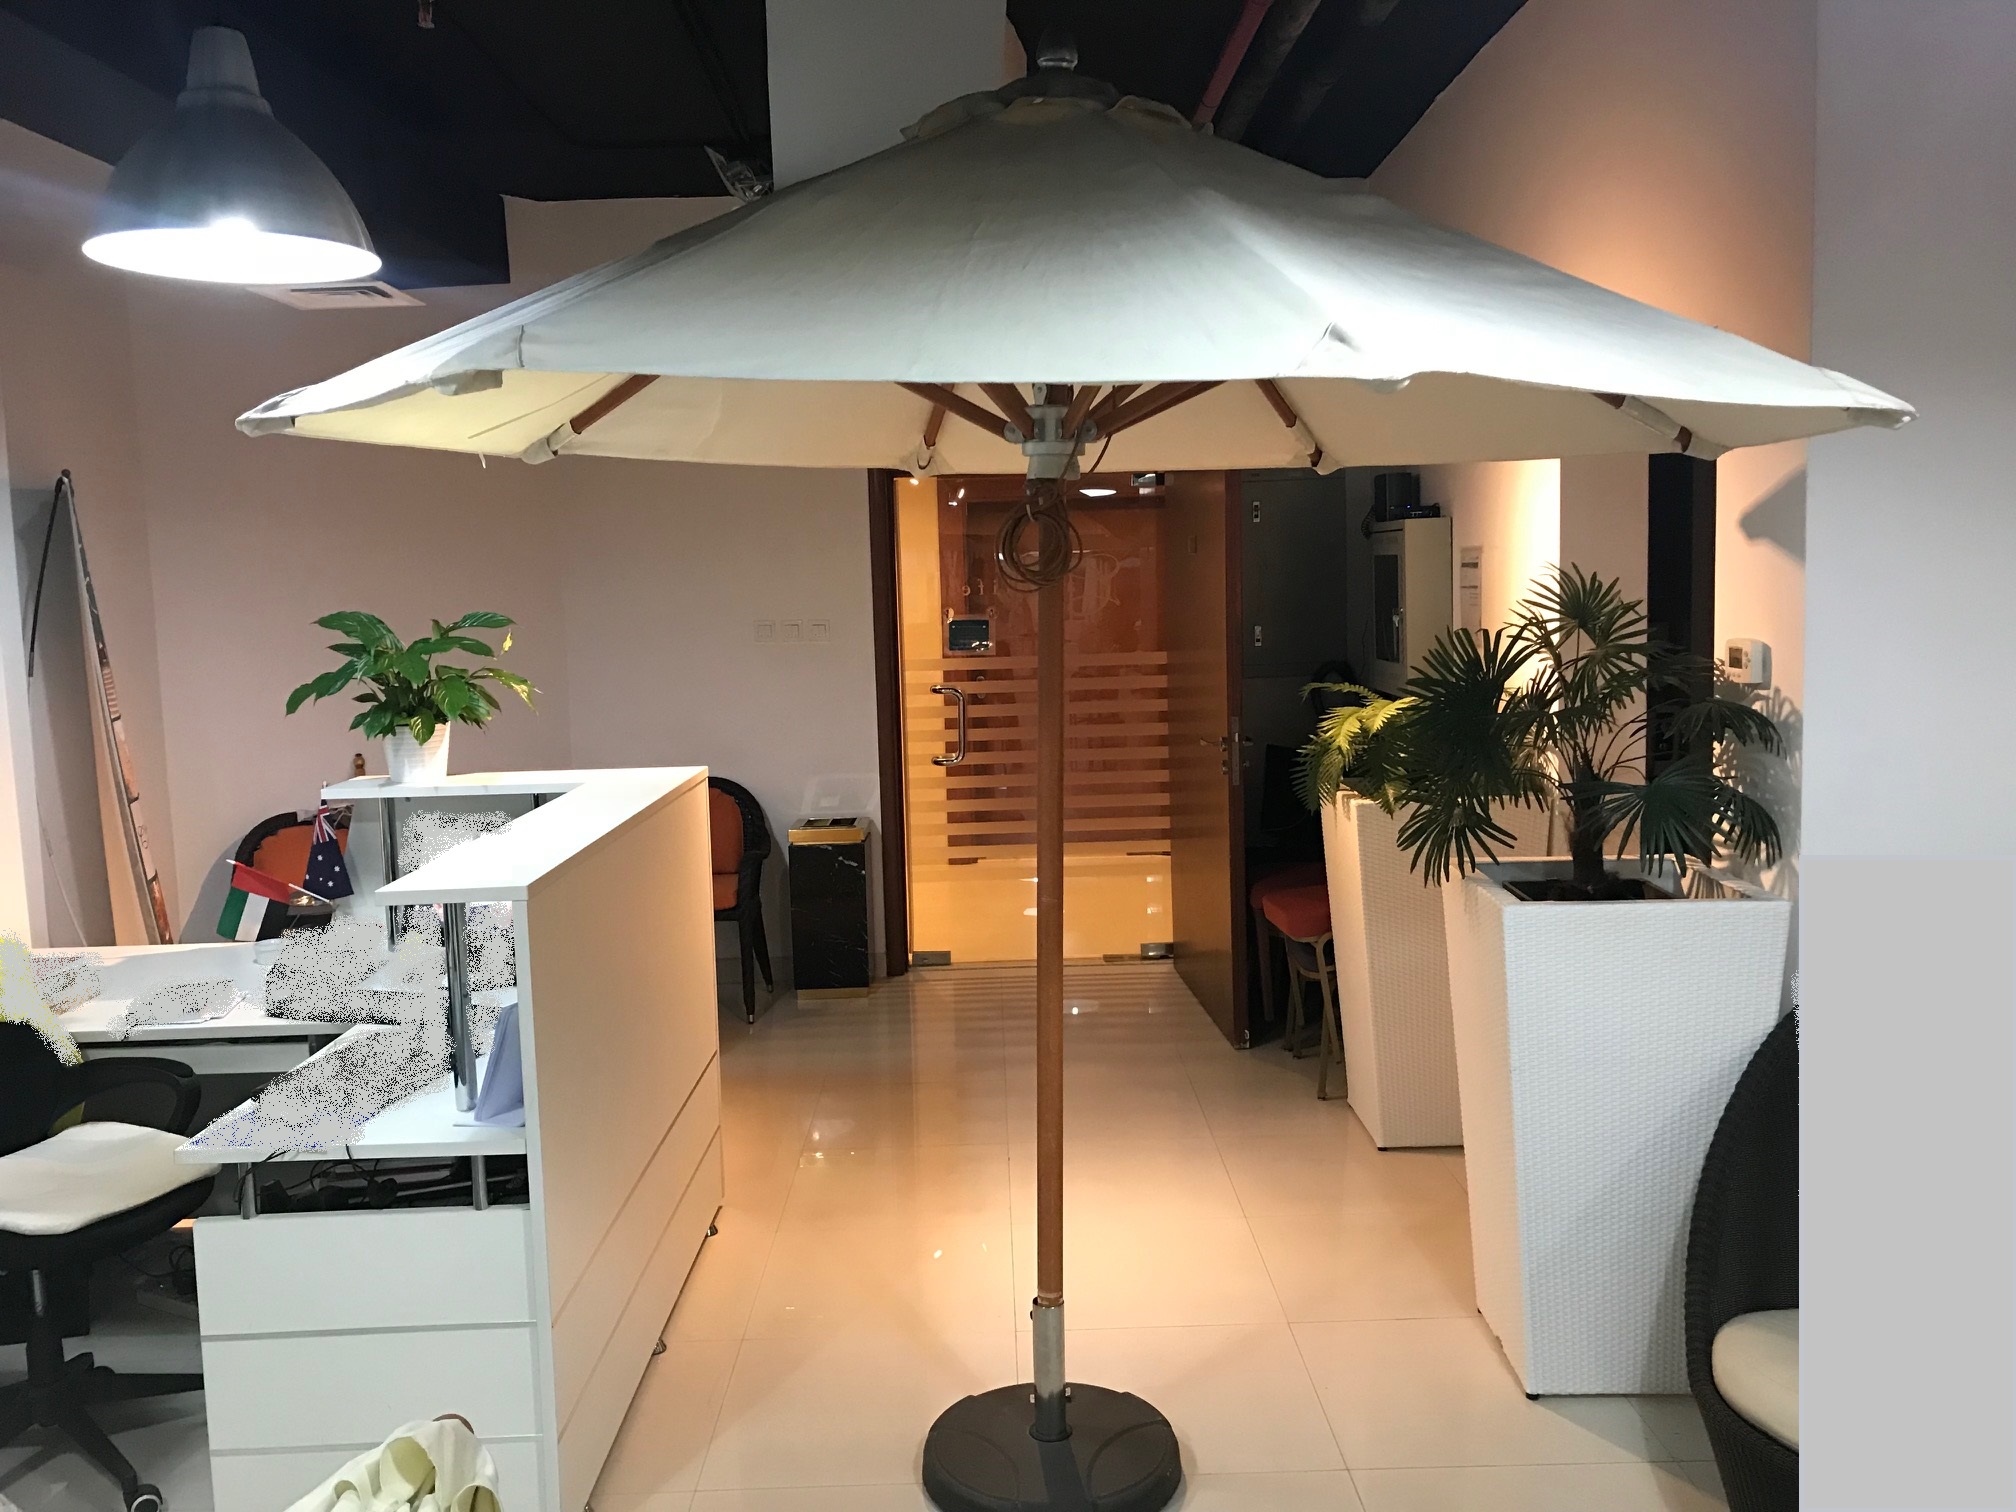 Umbrella : 3.0M dia FG Frame - Hotel Quality